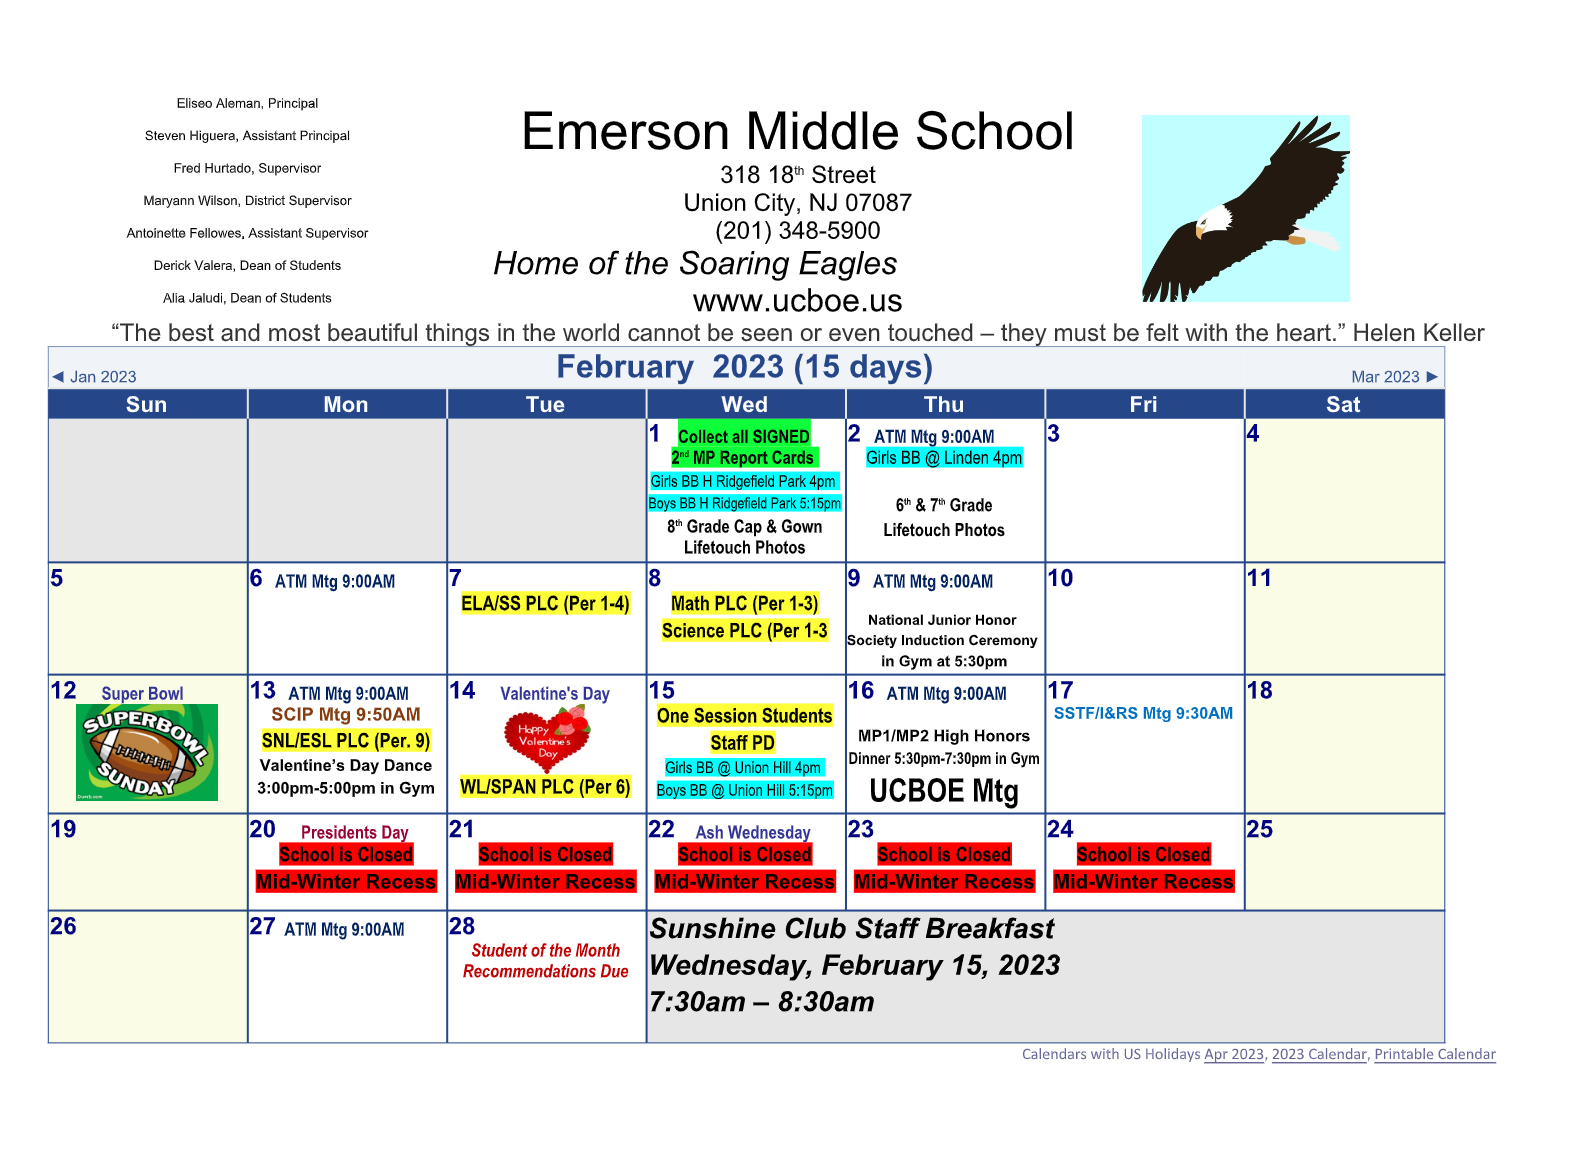 February 2023 Calendar-Emerson Middle School